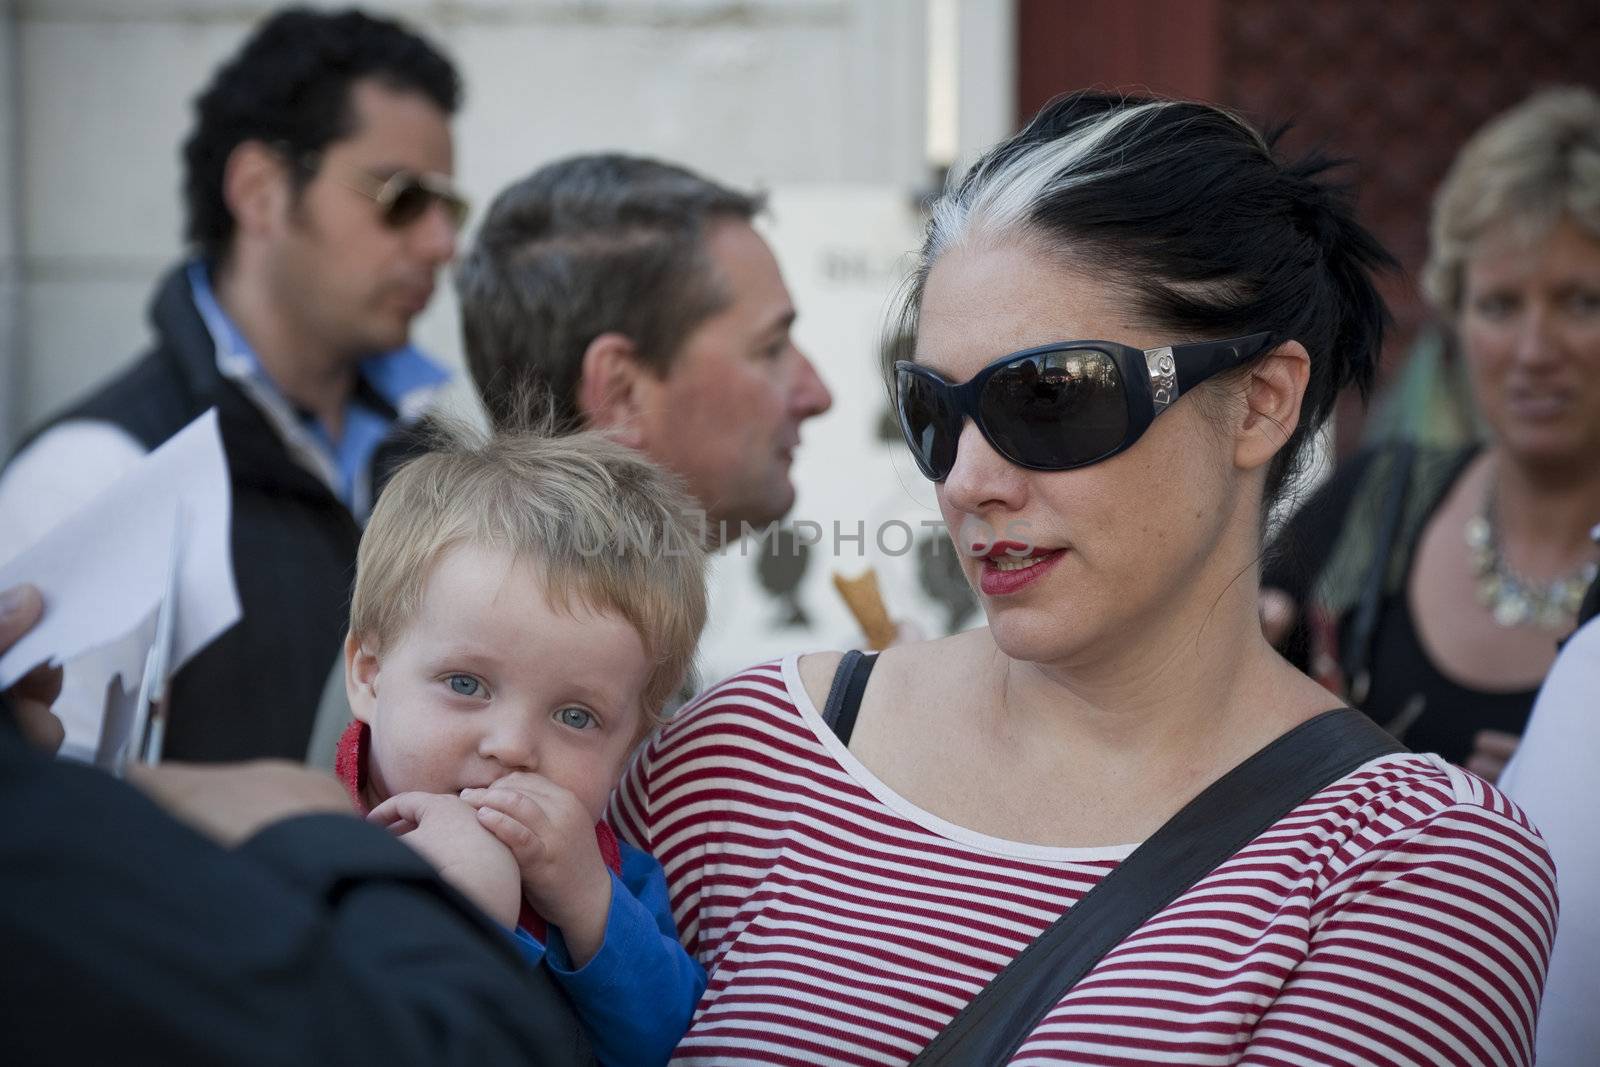 MOTHER AND LITTLE BOY, PARIS, FRANCE - SEPTEMBER 21, 2011: Crowd of tourists at Place du Tertre, Montmartre - Paris.